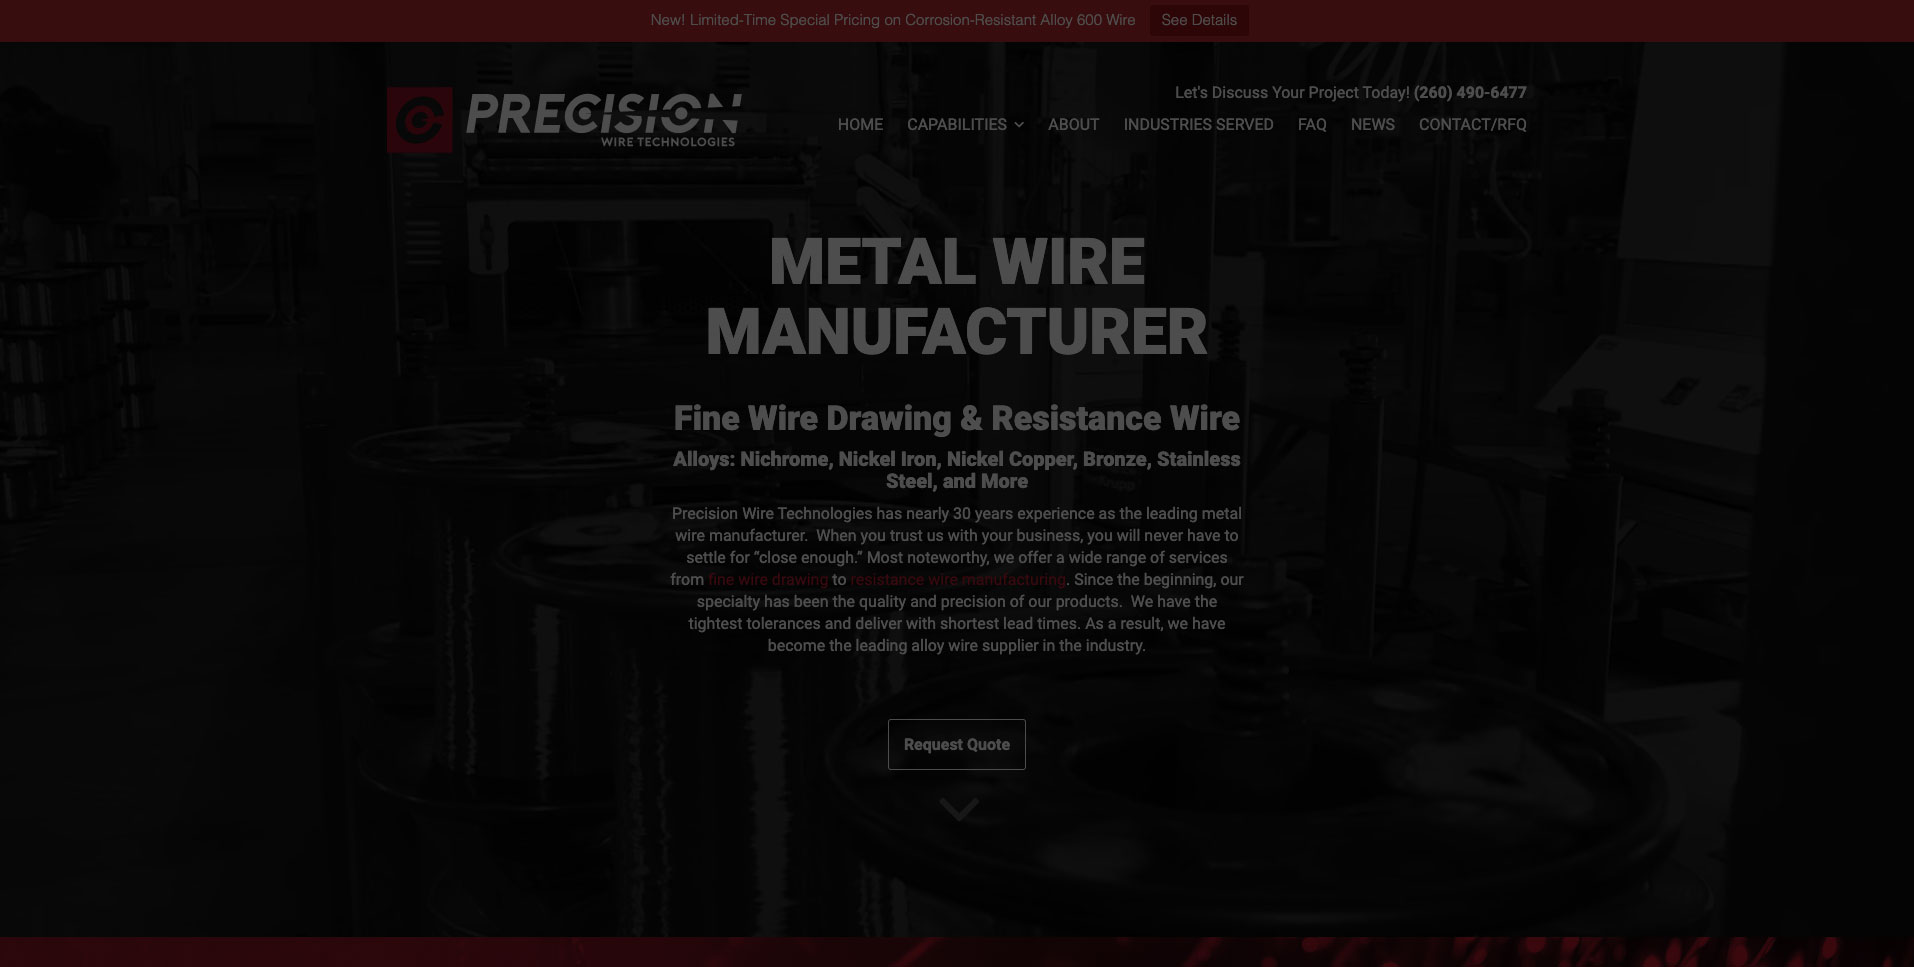 Precision Wire Technologies